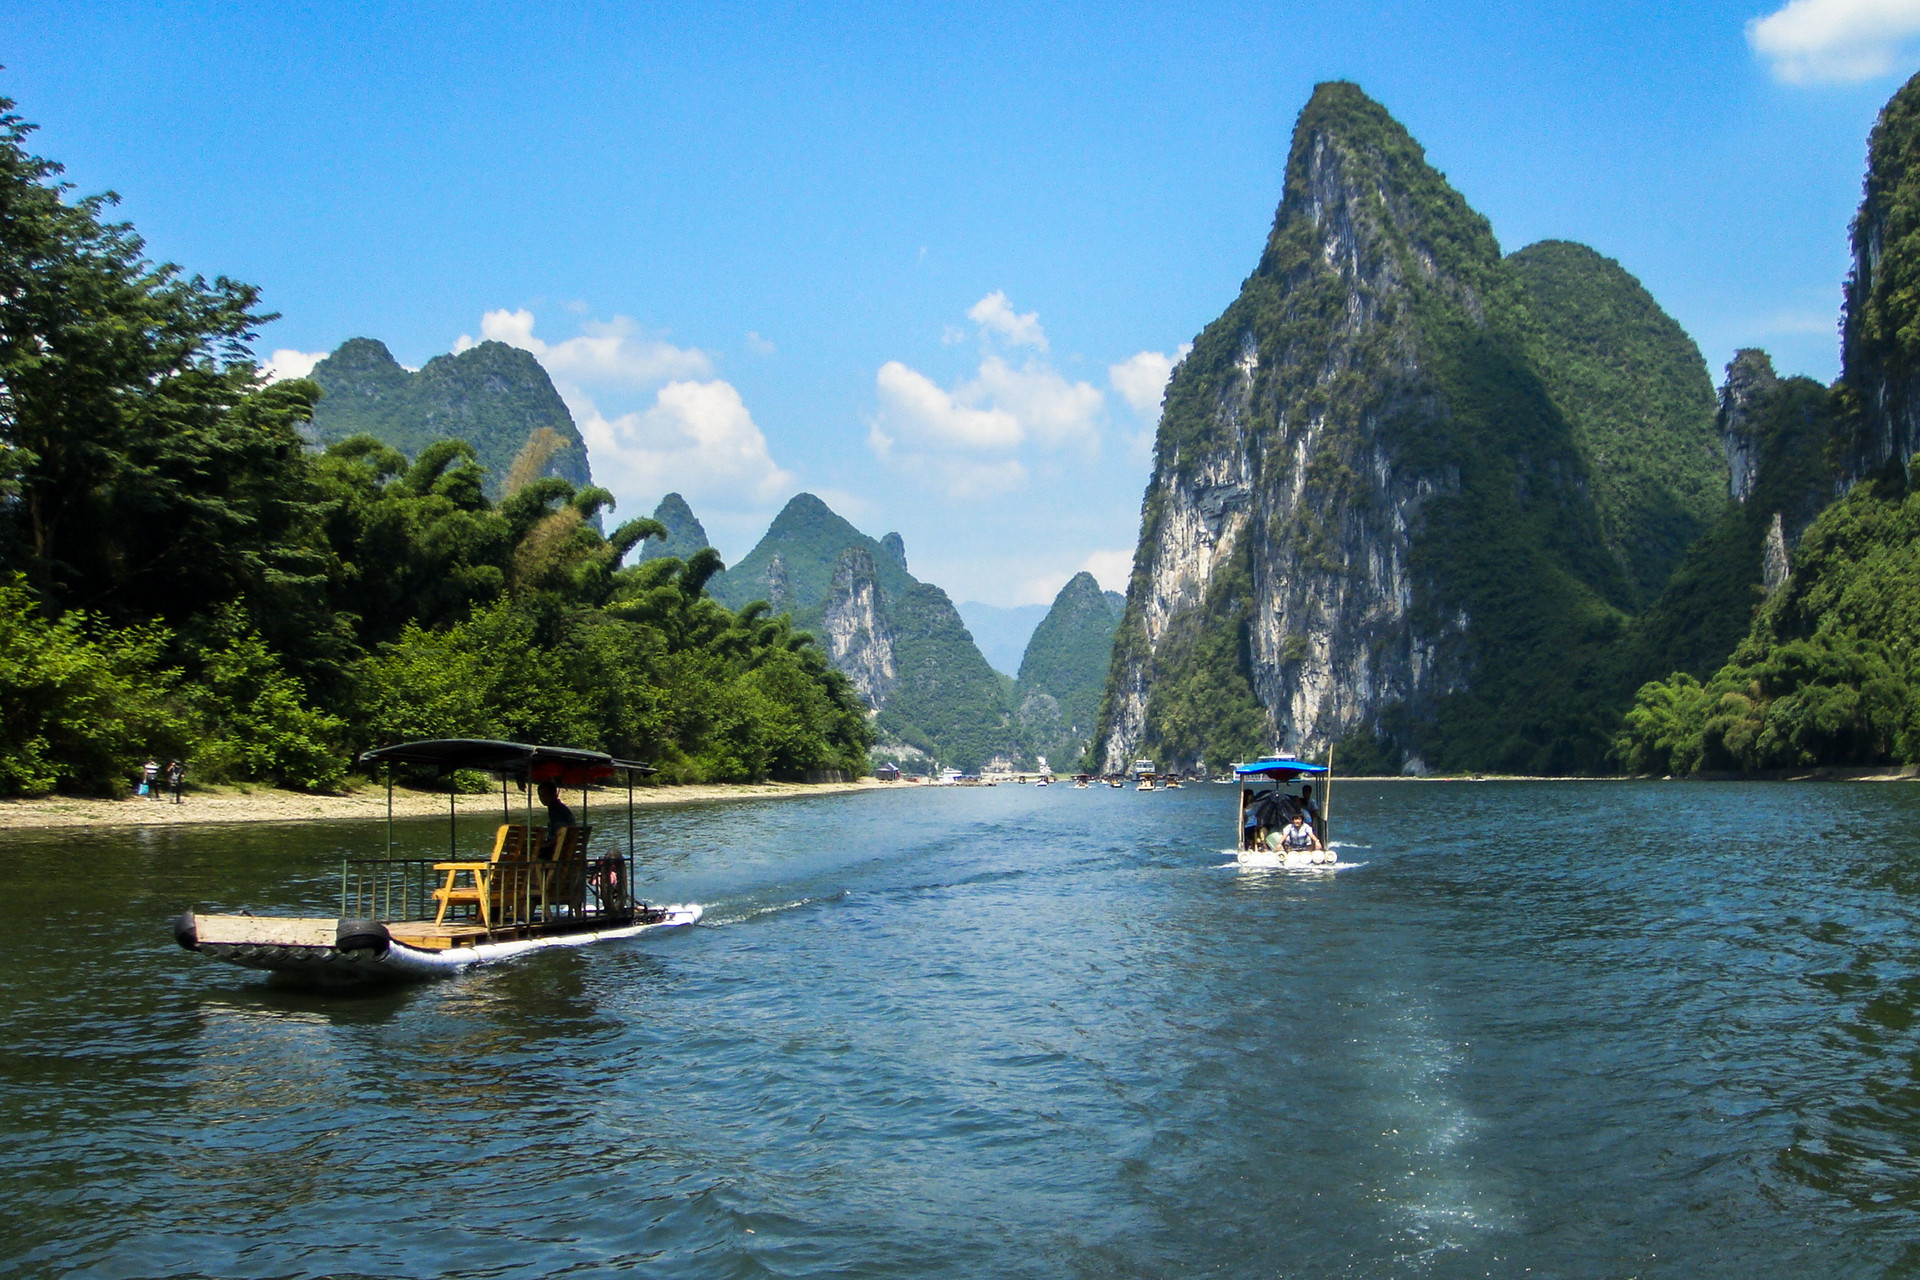 游客接待量降幅超七成 桂林旅游上半年预亏1.12亿元